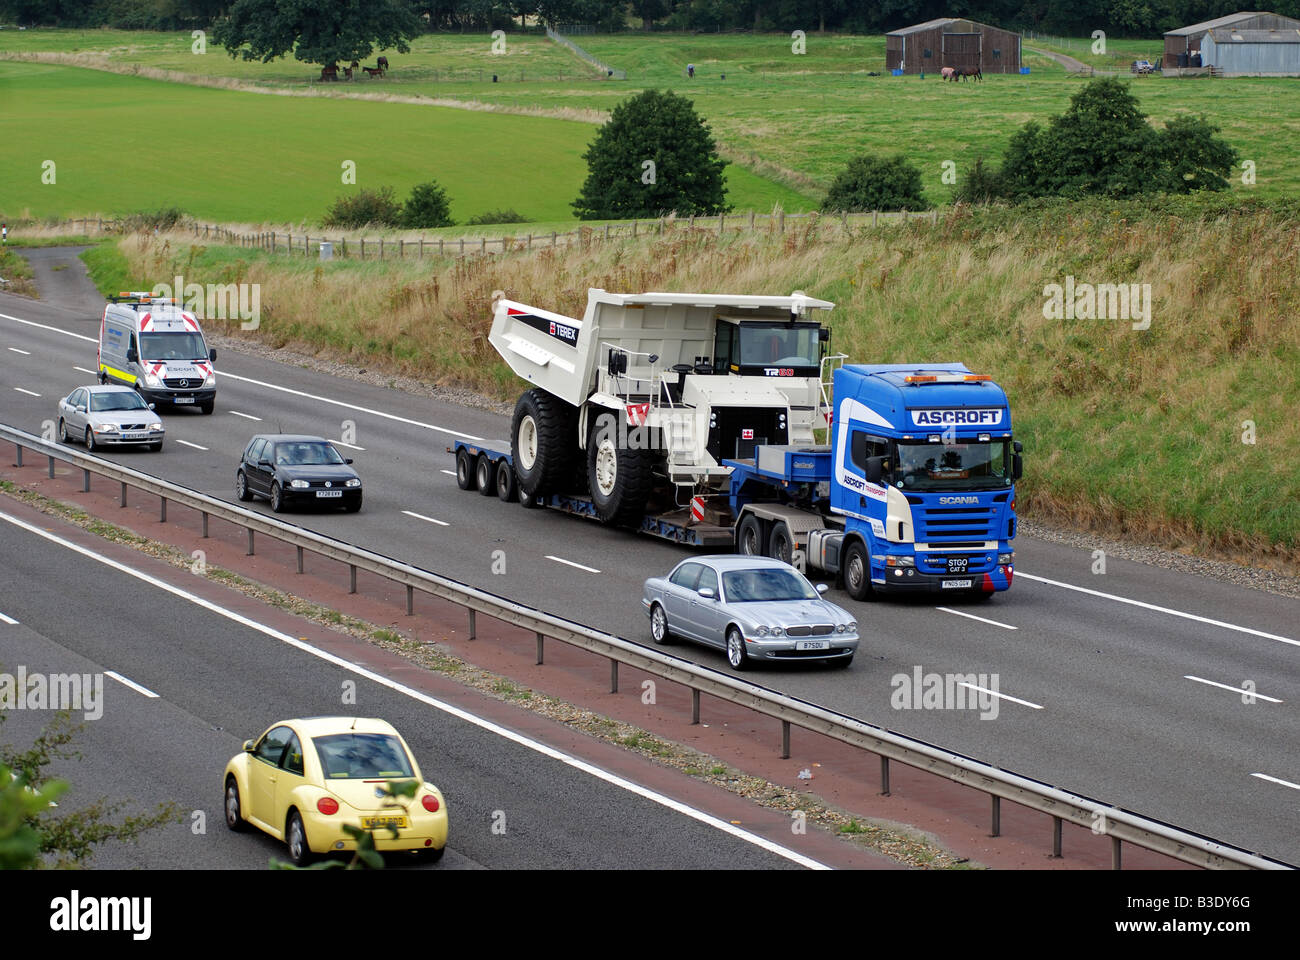 Large load on M40 motorway with escort vehicle behind England UK Stock Photo